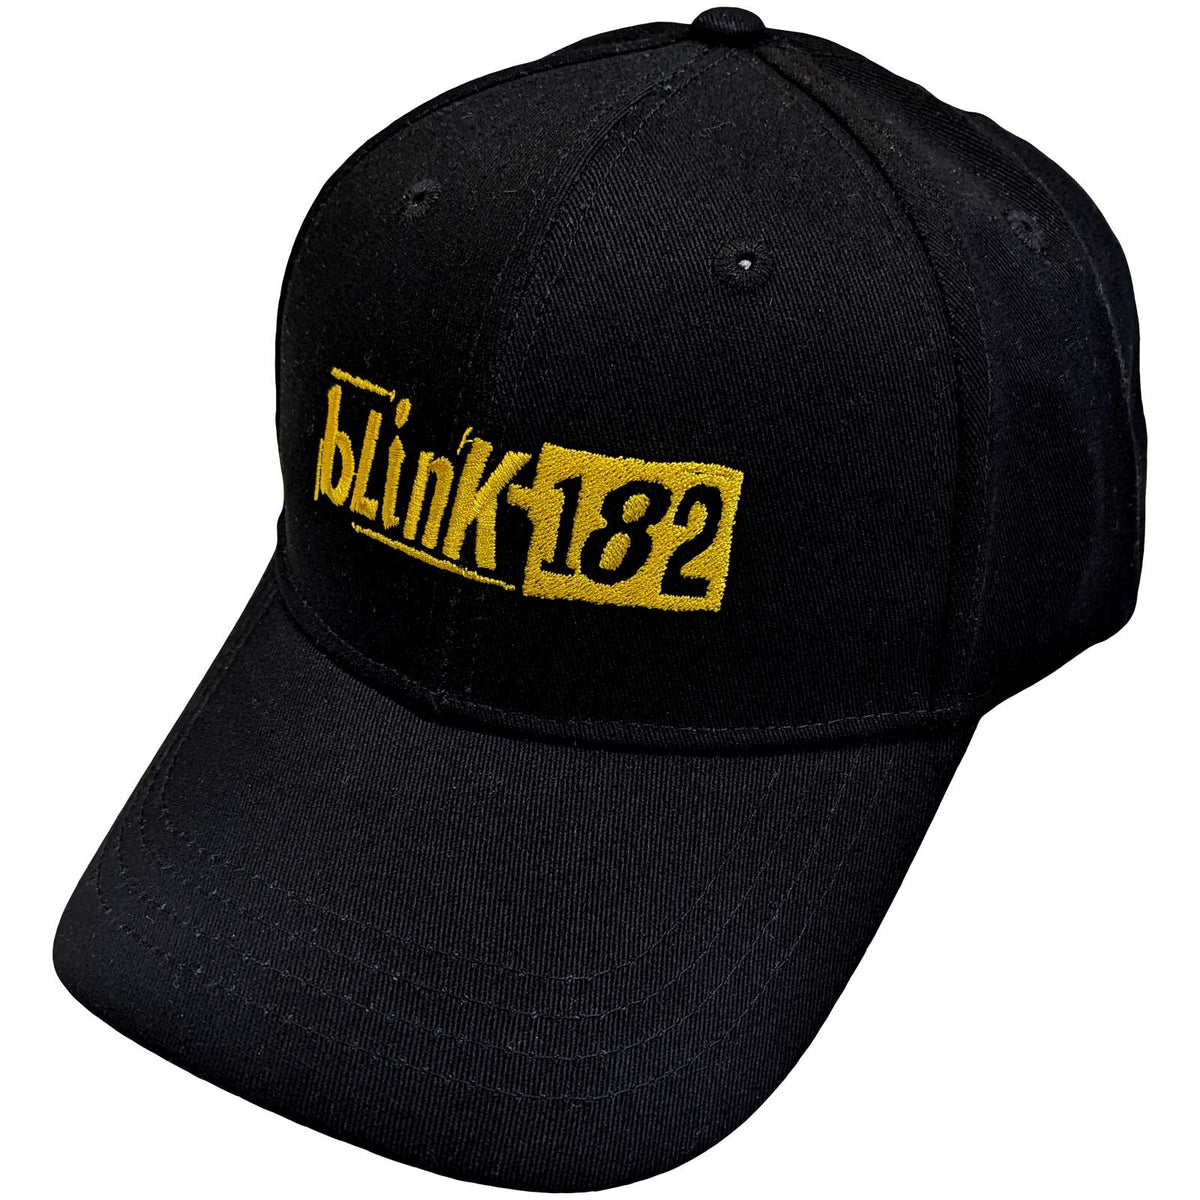 Blink 182 Official Licensed Baseball Cap - Modern Logo